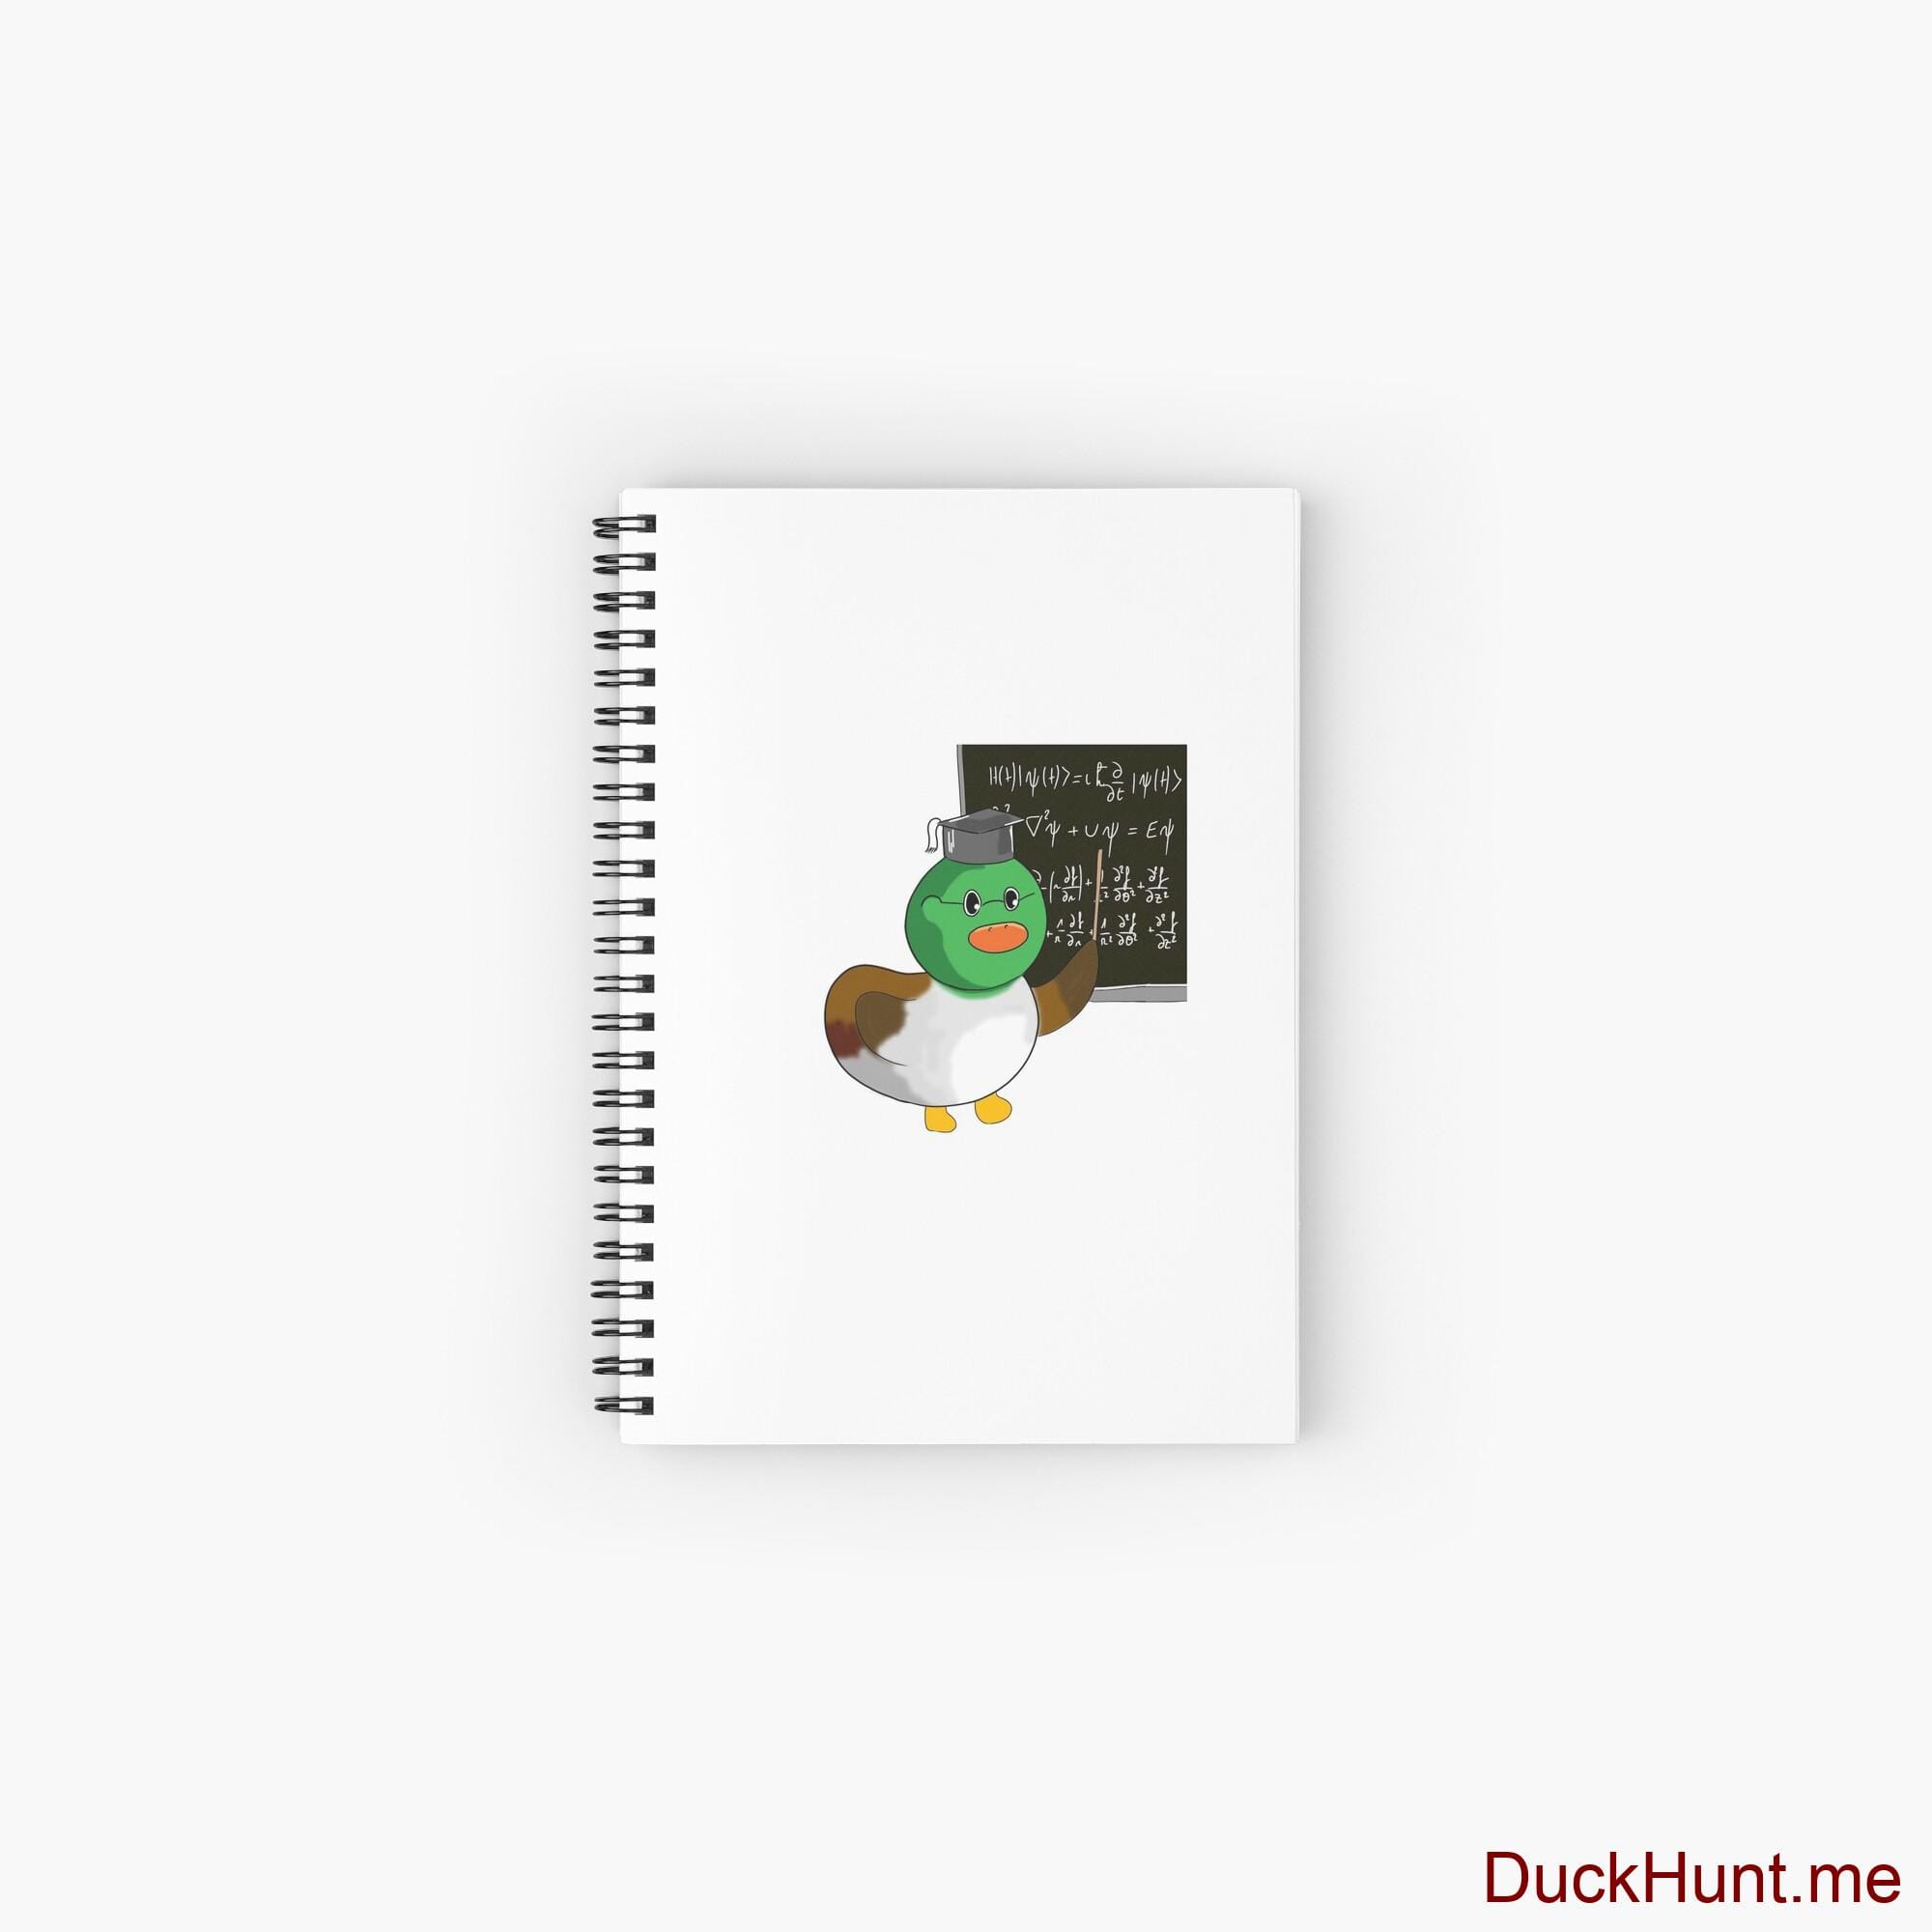 Prof Duck Spiral Notebook